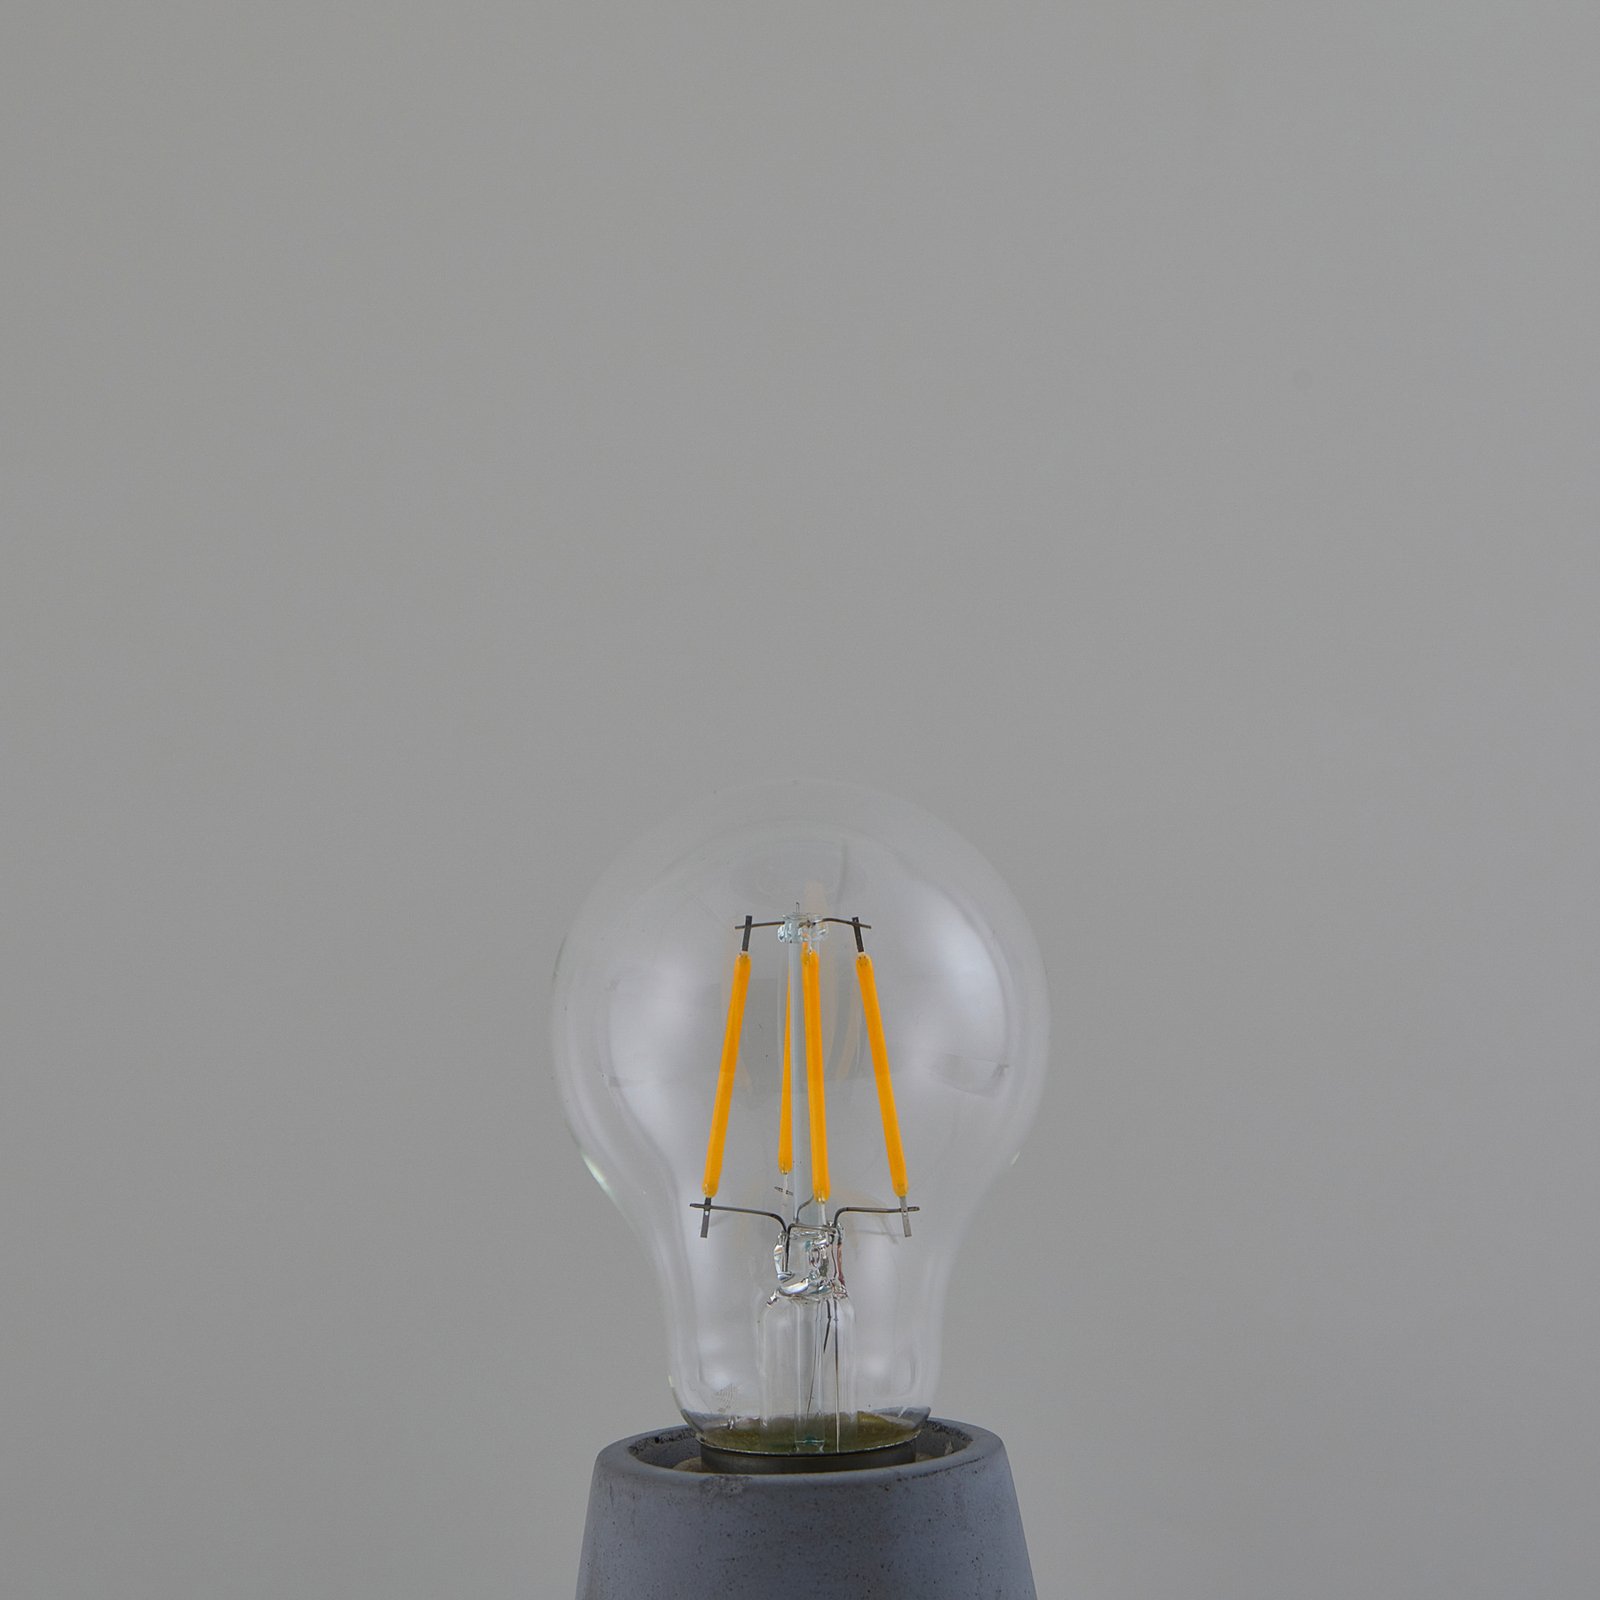 LED bulb Filament, clear, E27, 7.2W, 2700K, 1521 lm